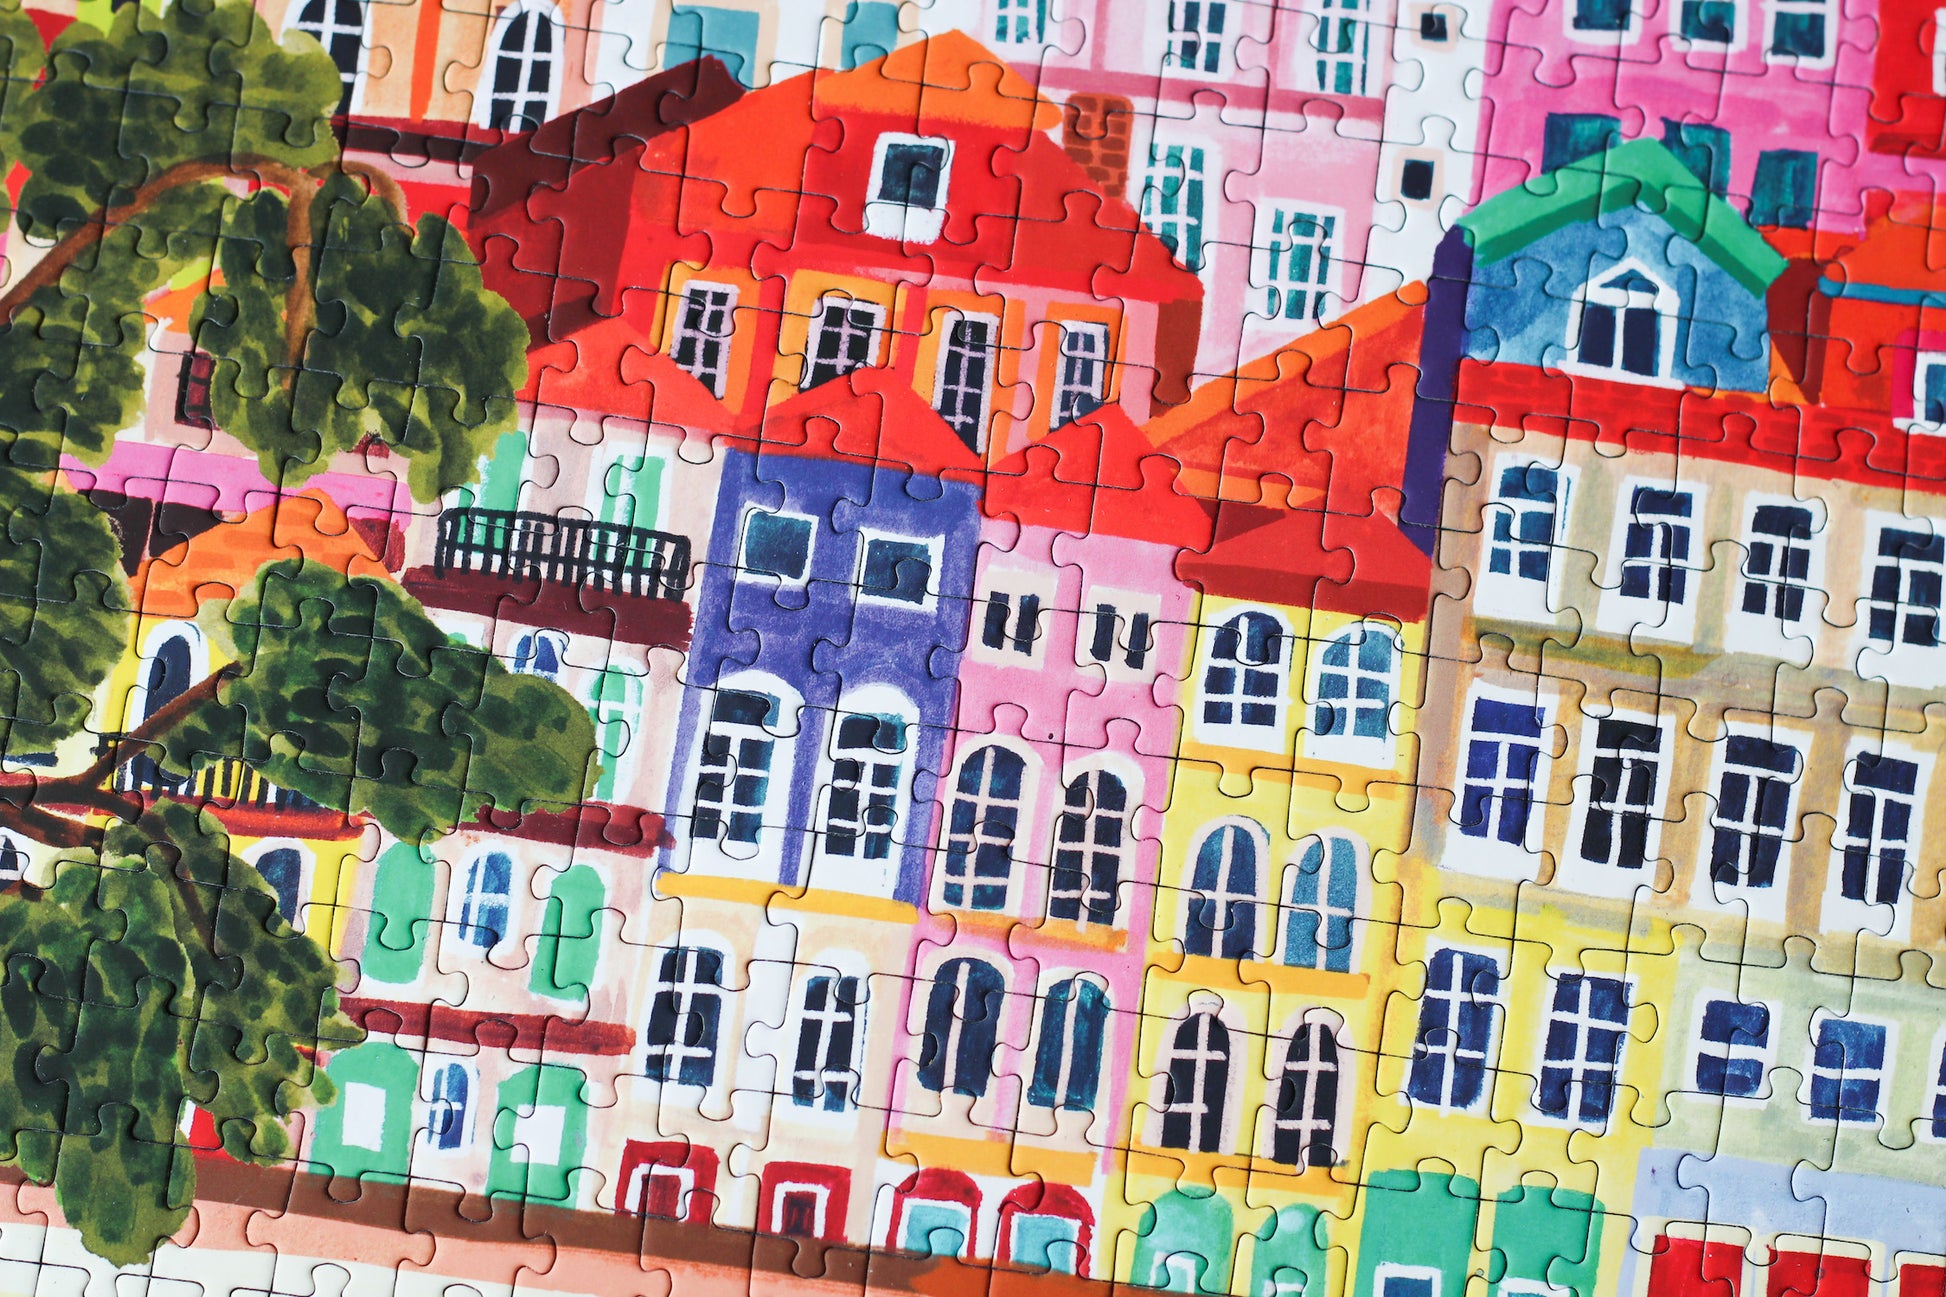 Außergewöhnliches Puzzle für Erwachsene mit 500 Teilen, das die portugiesische Stadt Porto mit ihren bunten Häusern zeigt.